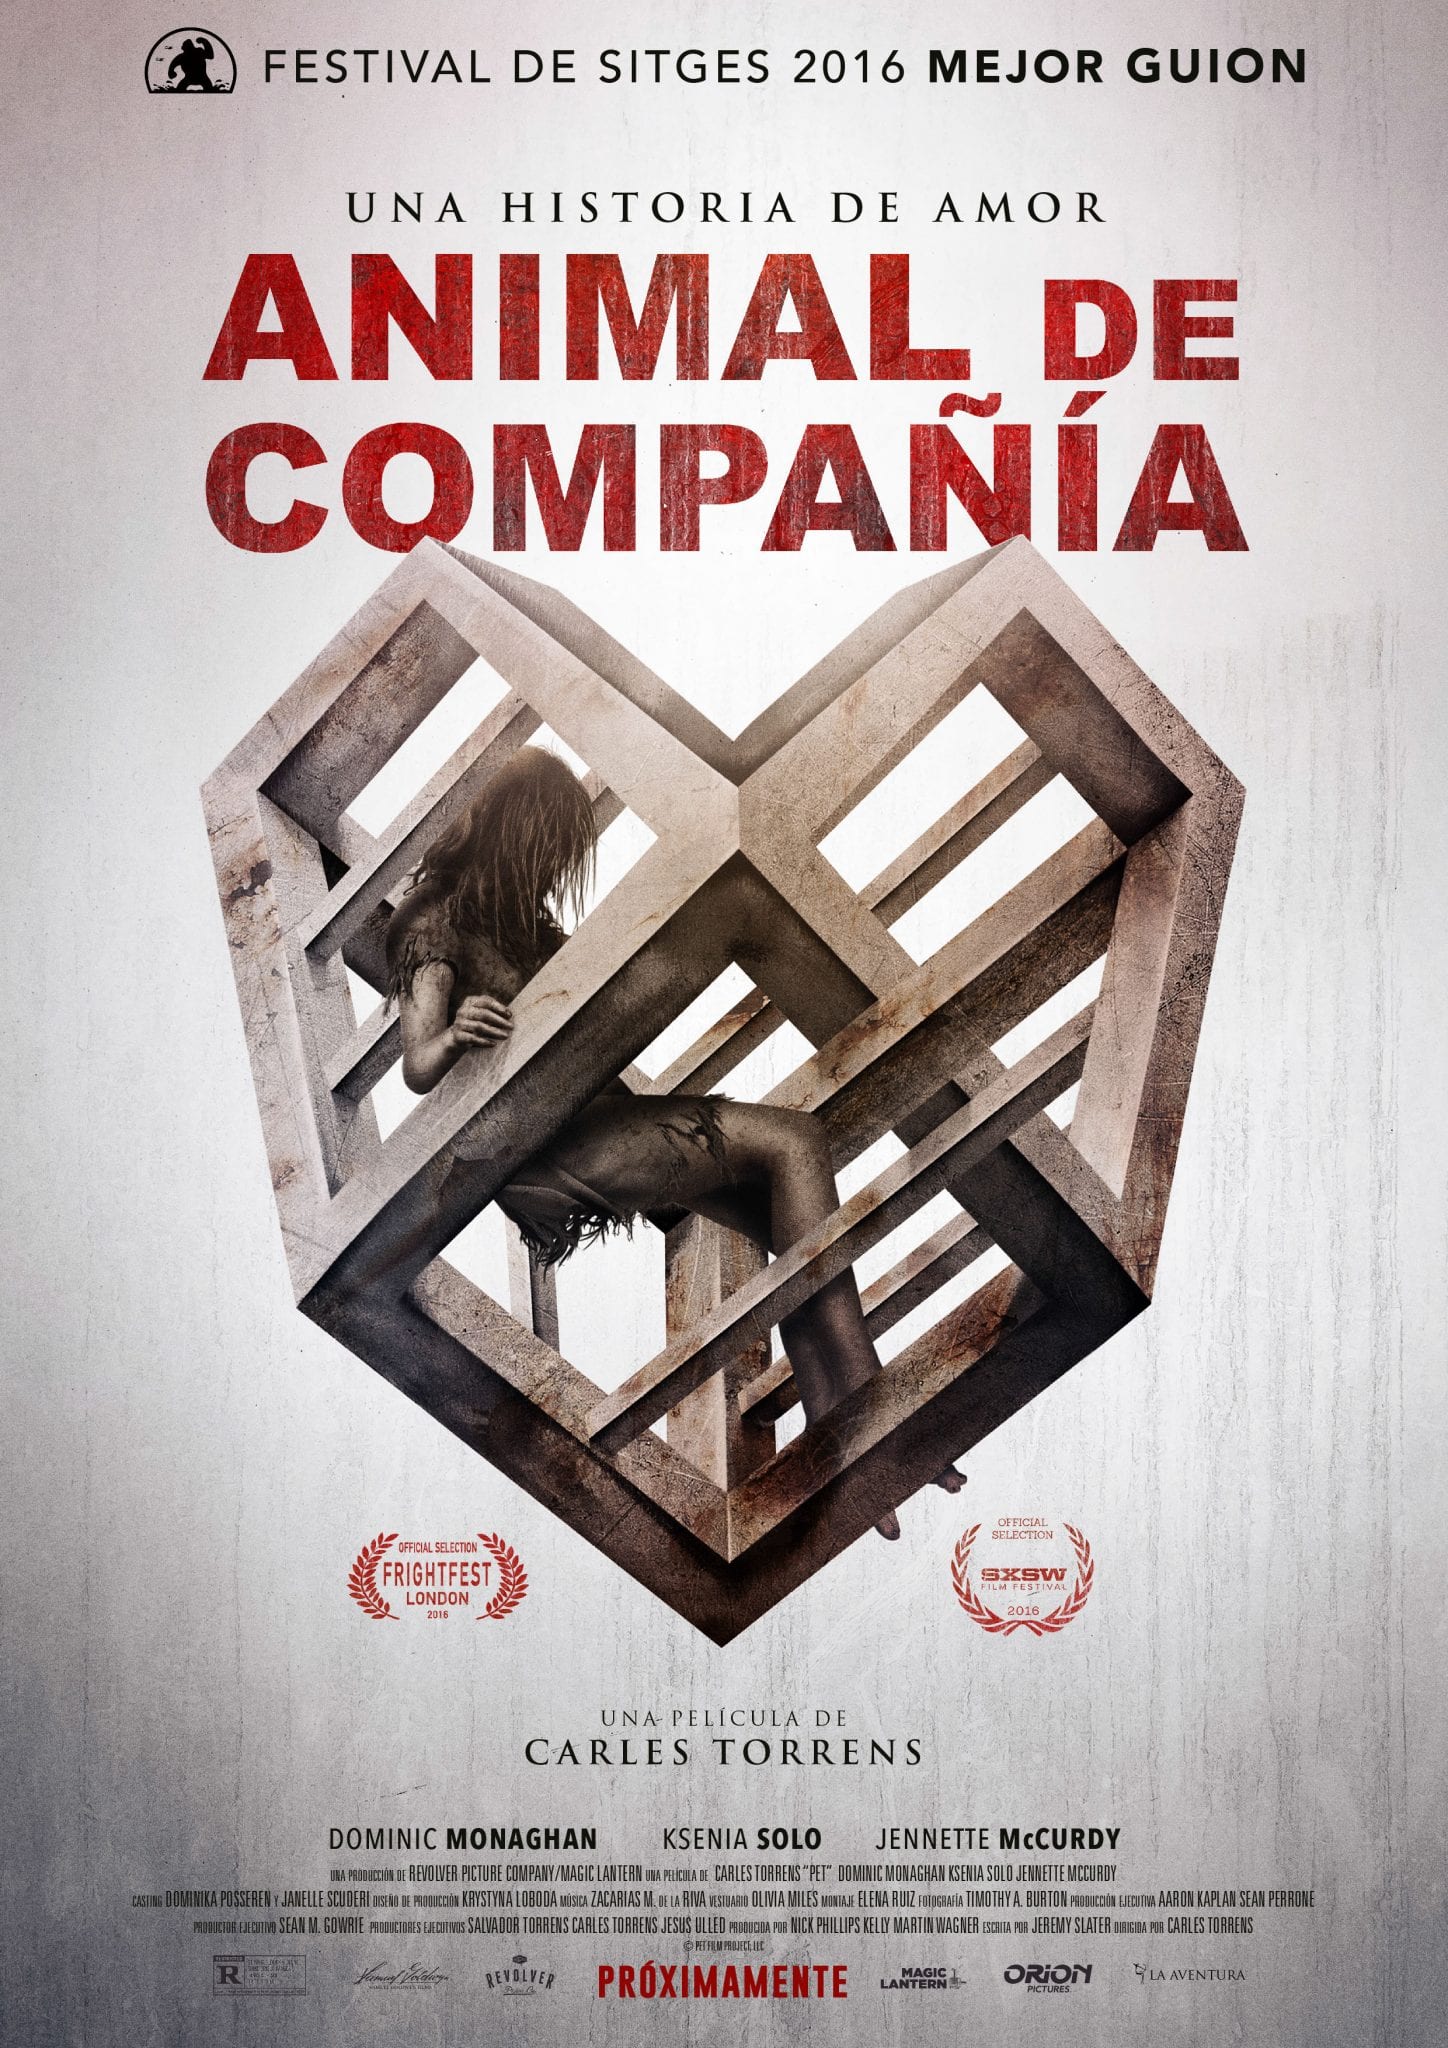 ANIMAL DE COMPAÑÍA (Pet) – Carles Torrens